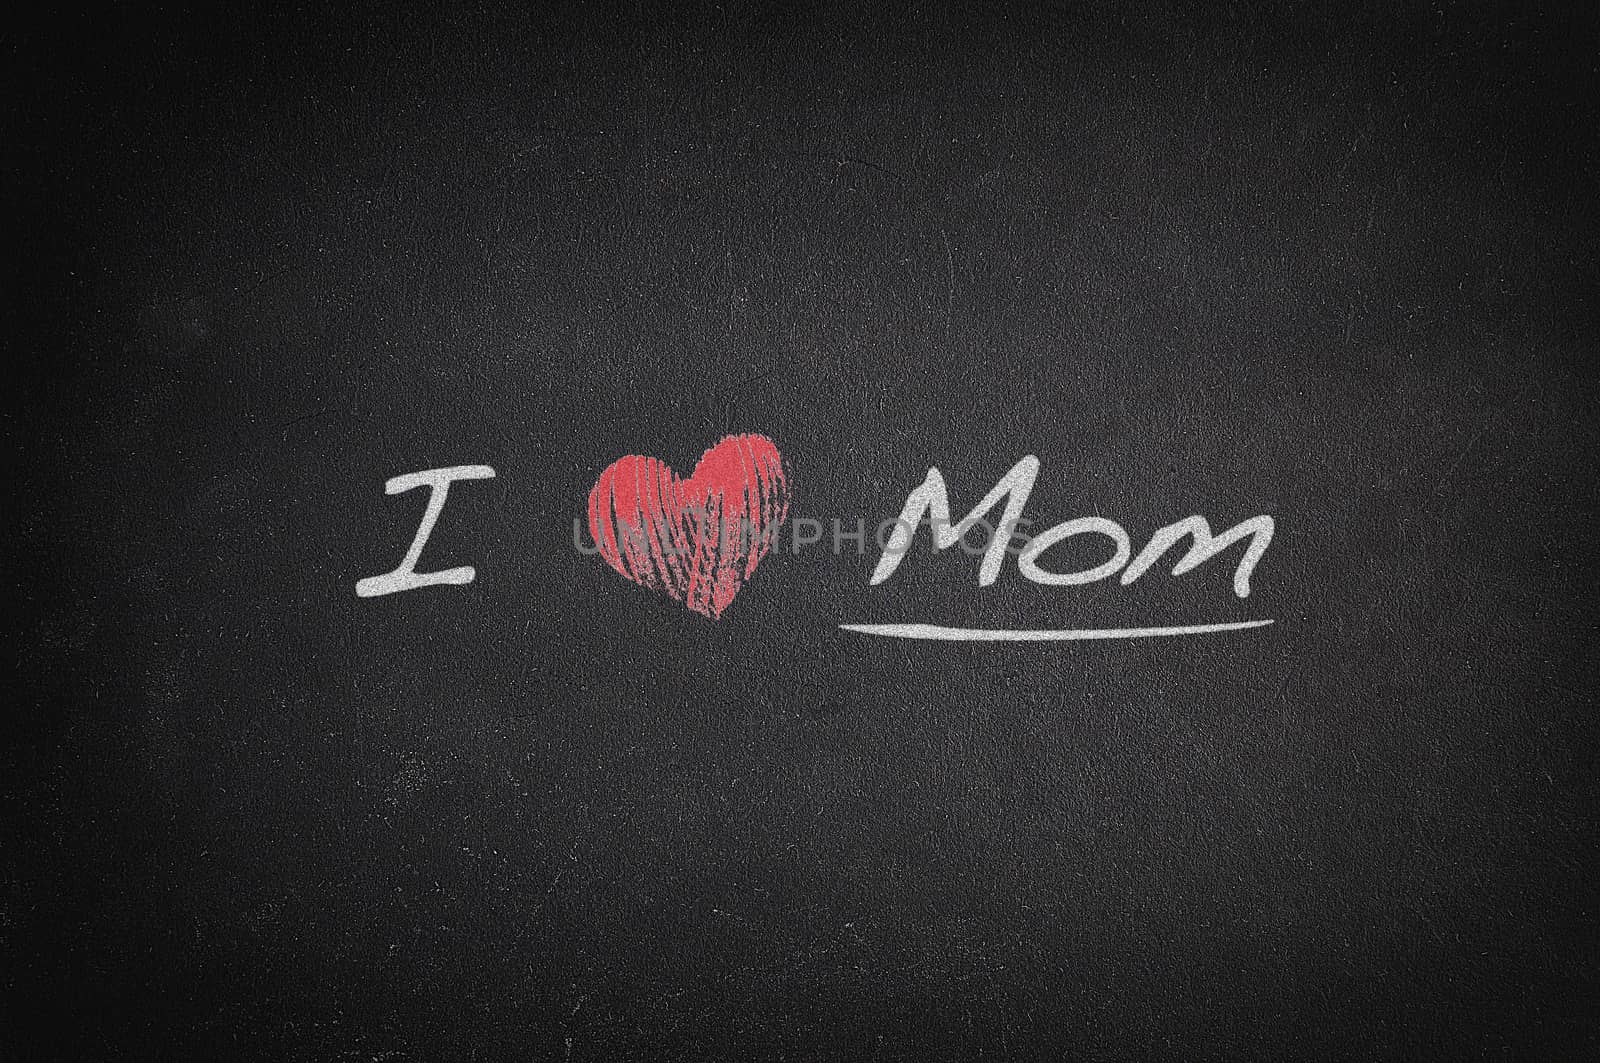 Blackboard with phrase, I love mom.